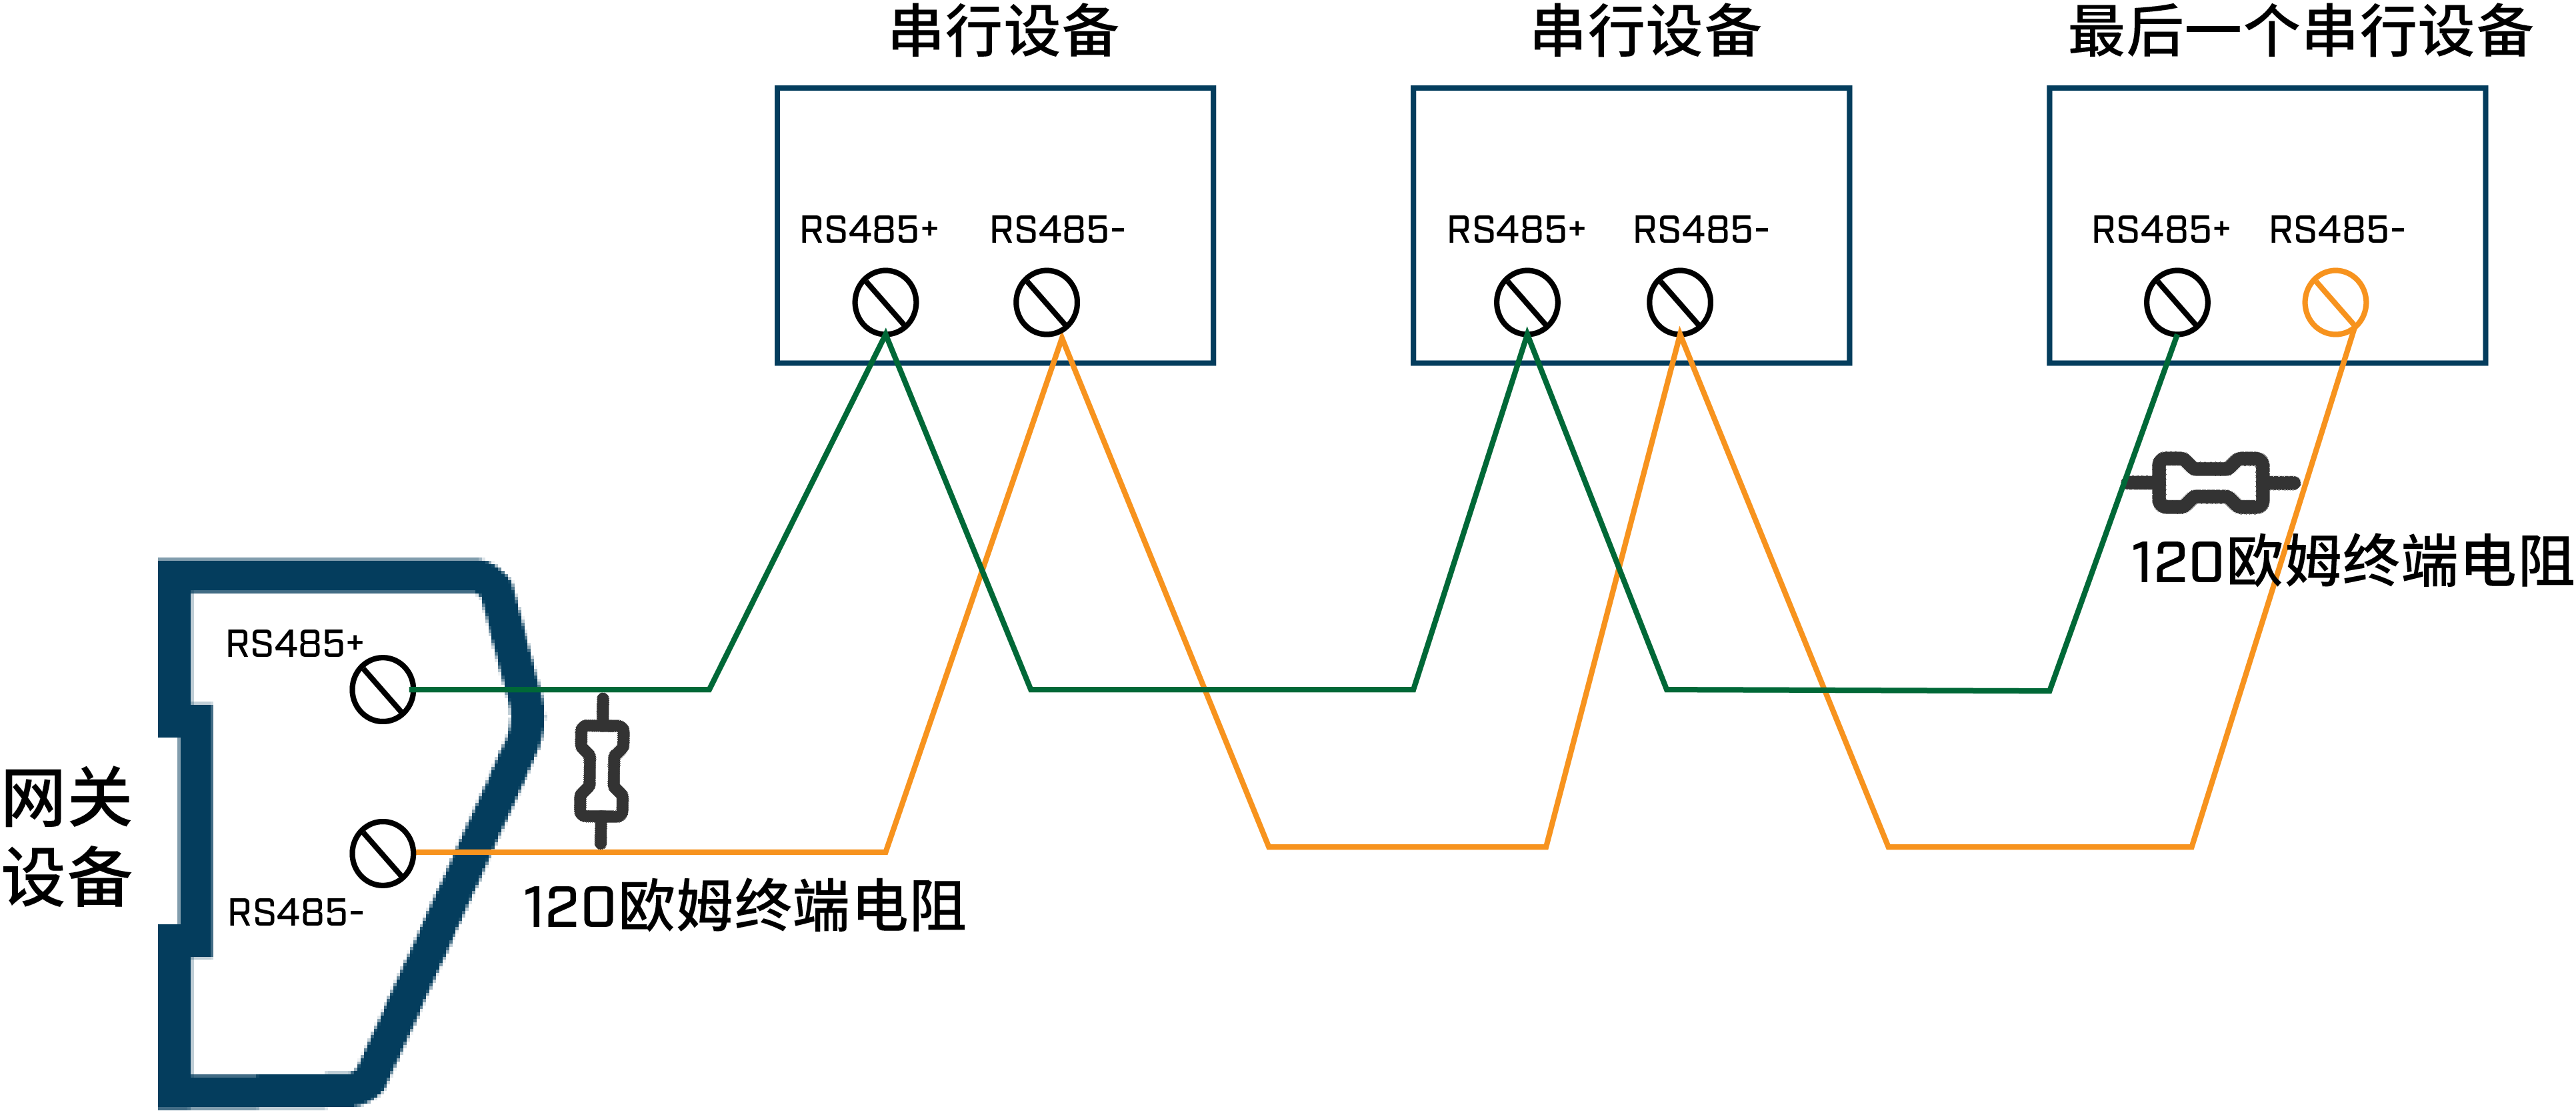 使用屏蔽双绞线,采用手拉手菊花链式拓扑结构将网关和各串行设备节点